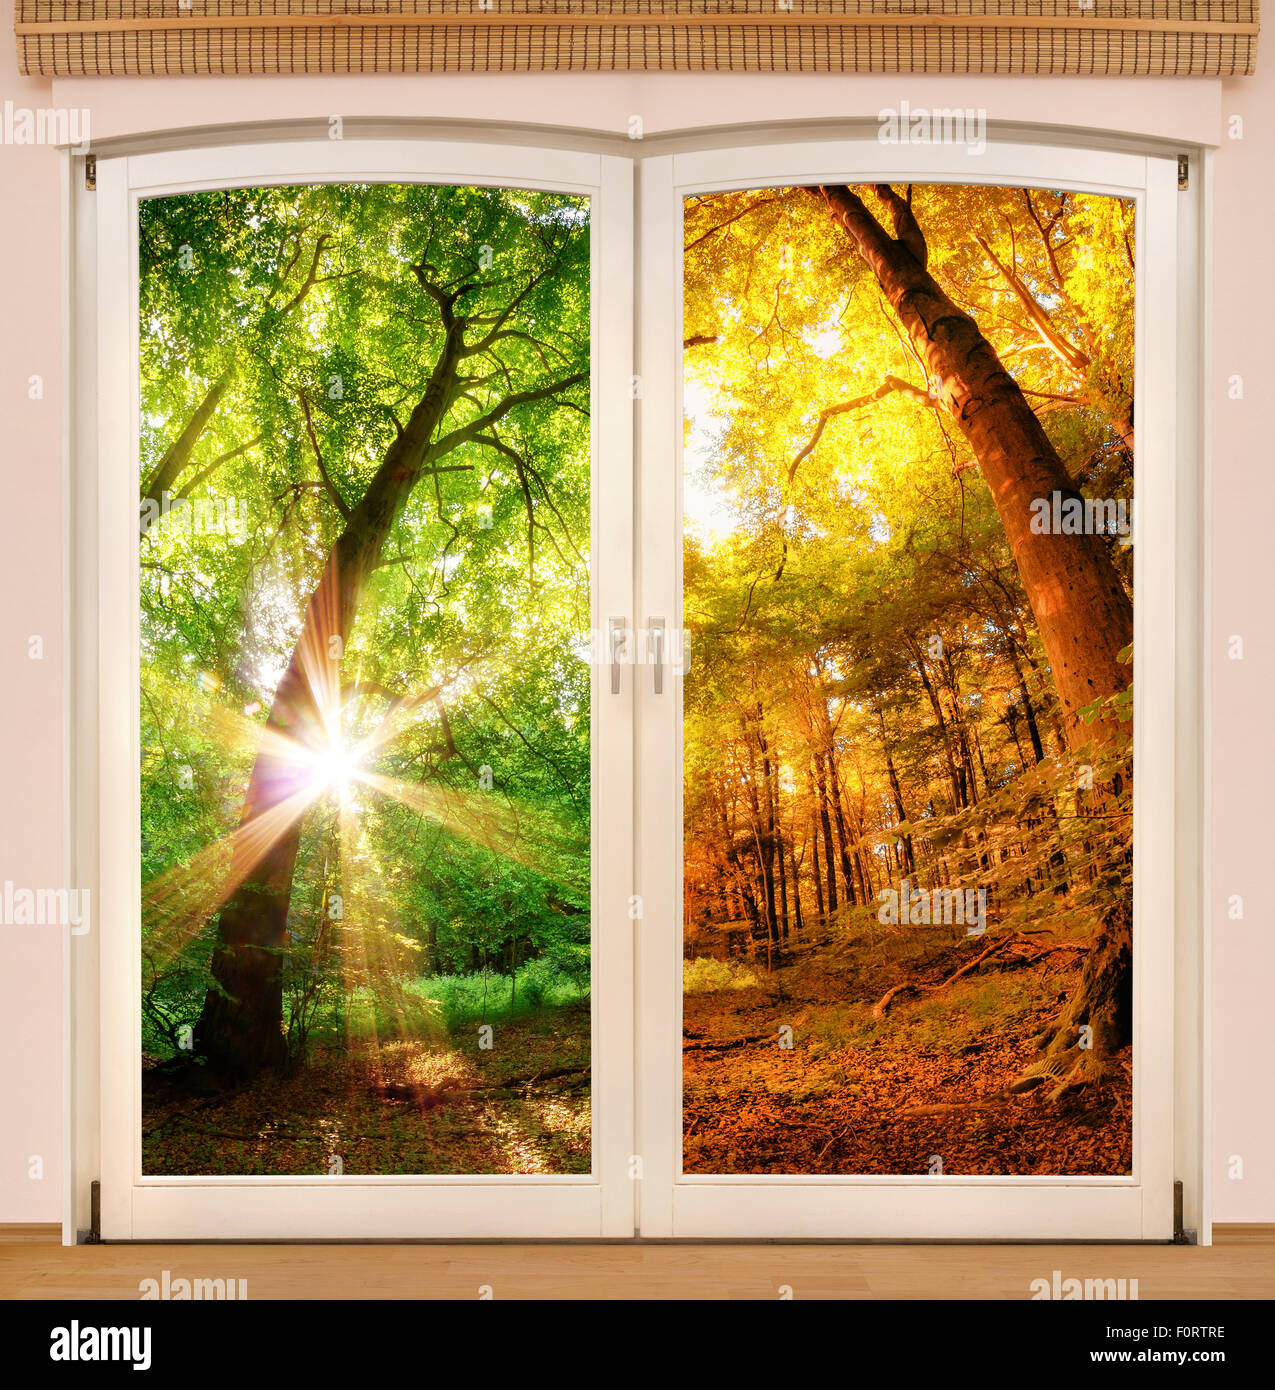 Fenêtre magique montrant le changement de saisons, avec une moitié de la forêt ensoleillée en été et l'autre moitié en couleurs d'automne Banque D'Images